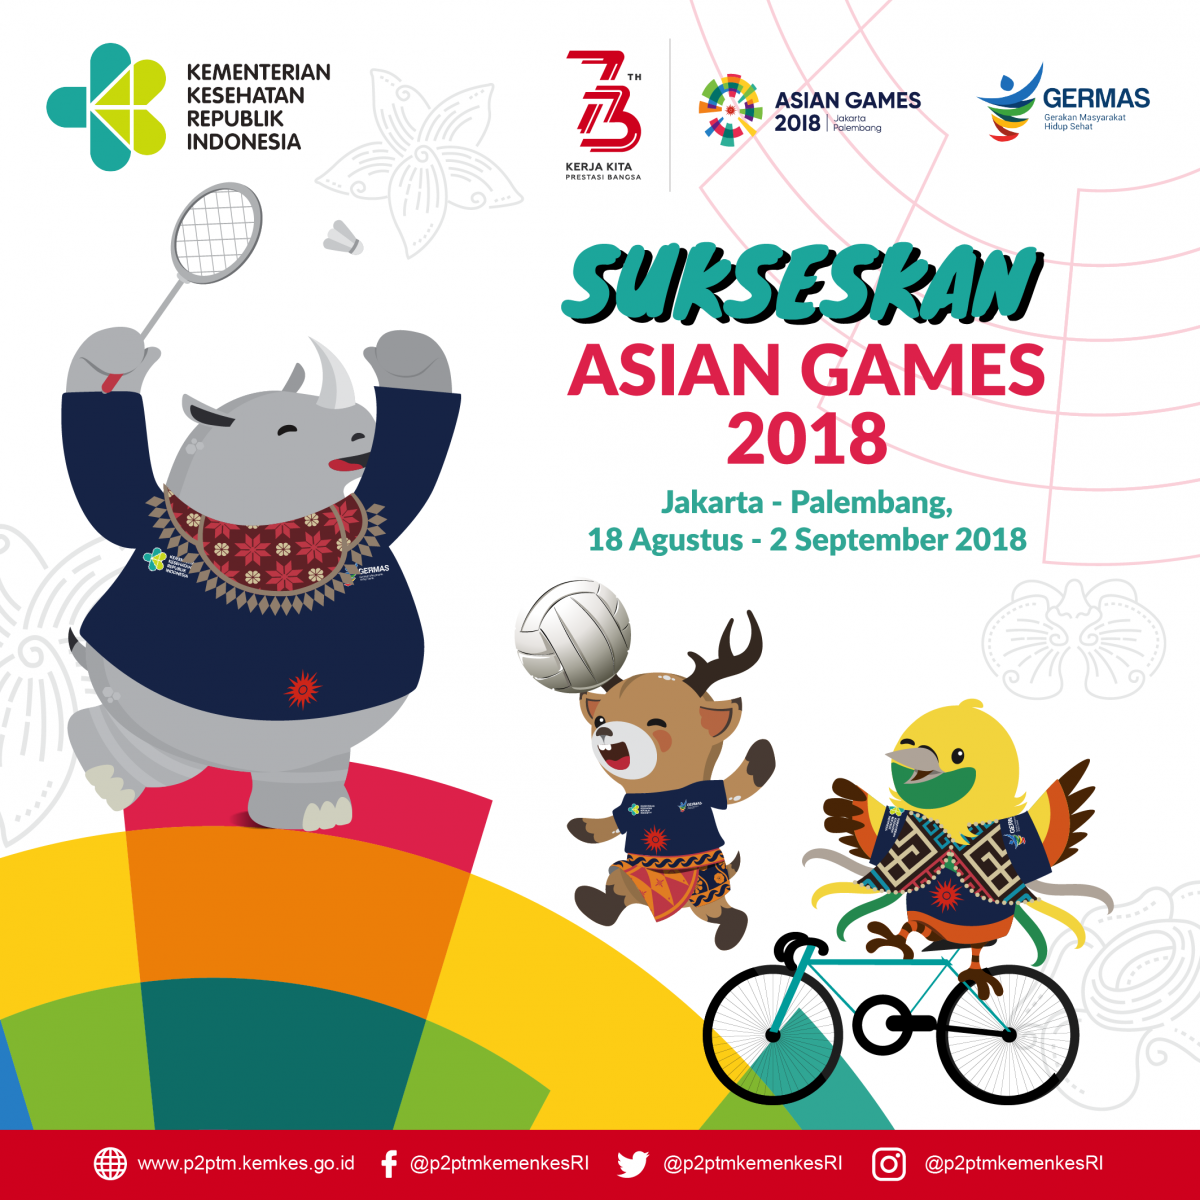 Sukseskan Asian Games 2018, Jakarta - Palembang,  18 Agustus - 2 September 2018